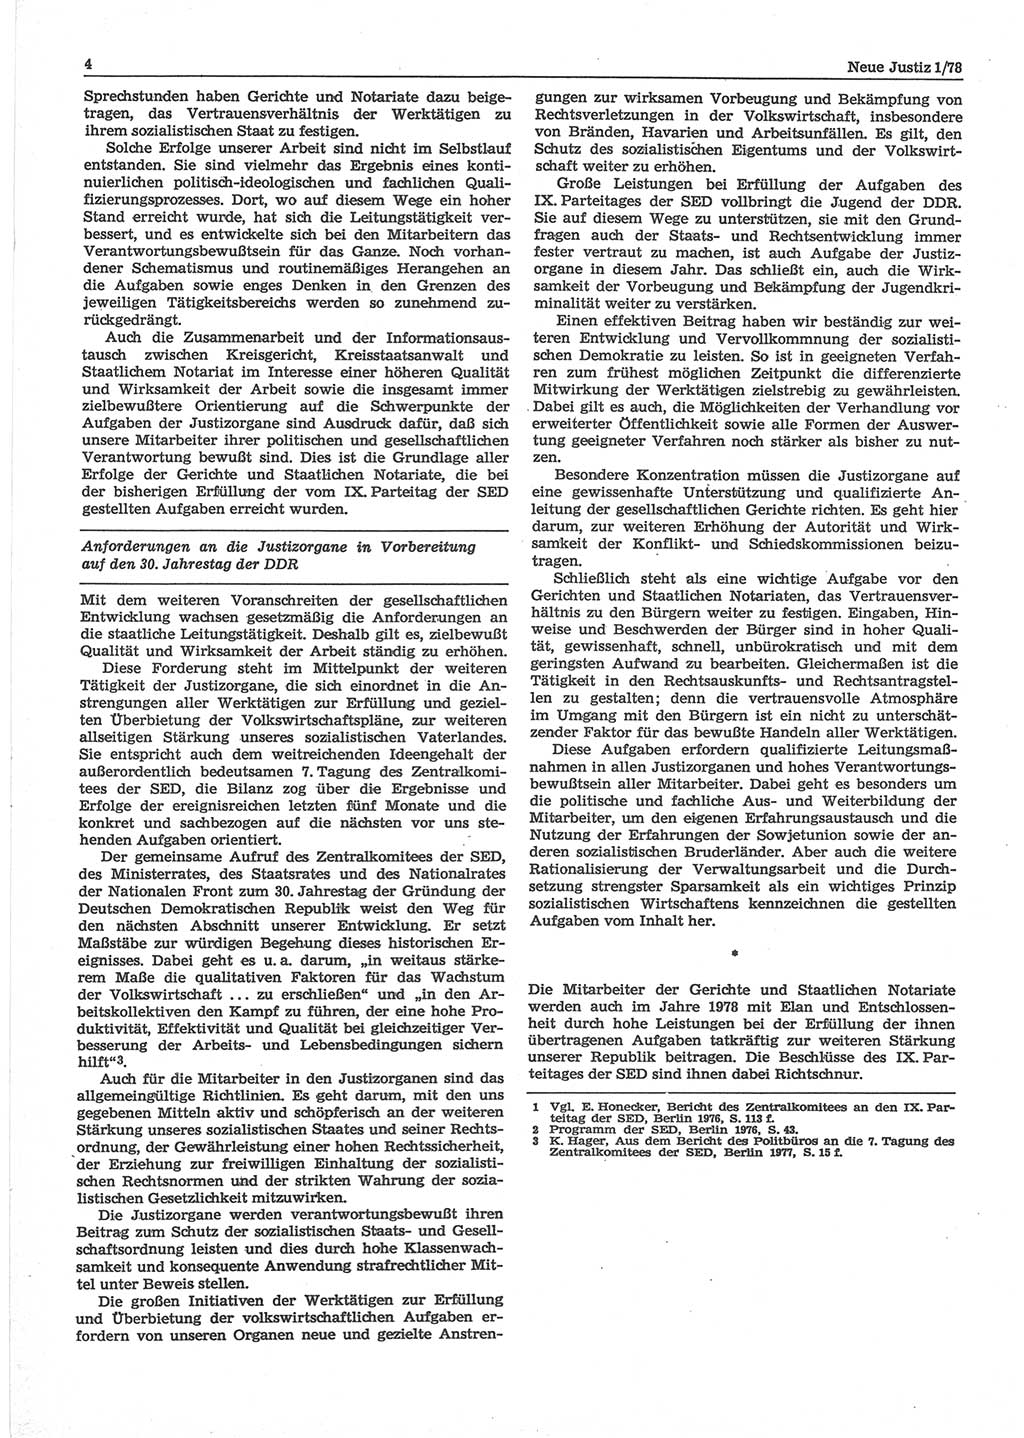 Neue Justiz (NJ), Zeitschrift für sozialistisches Recht und Gesetzlichkeit [Deutsche Demokratische Republik (DDR)], 32. Jahrgang 1978, Seite 4 (NJ DDR 1978, S. 4)